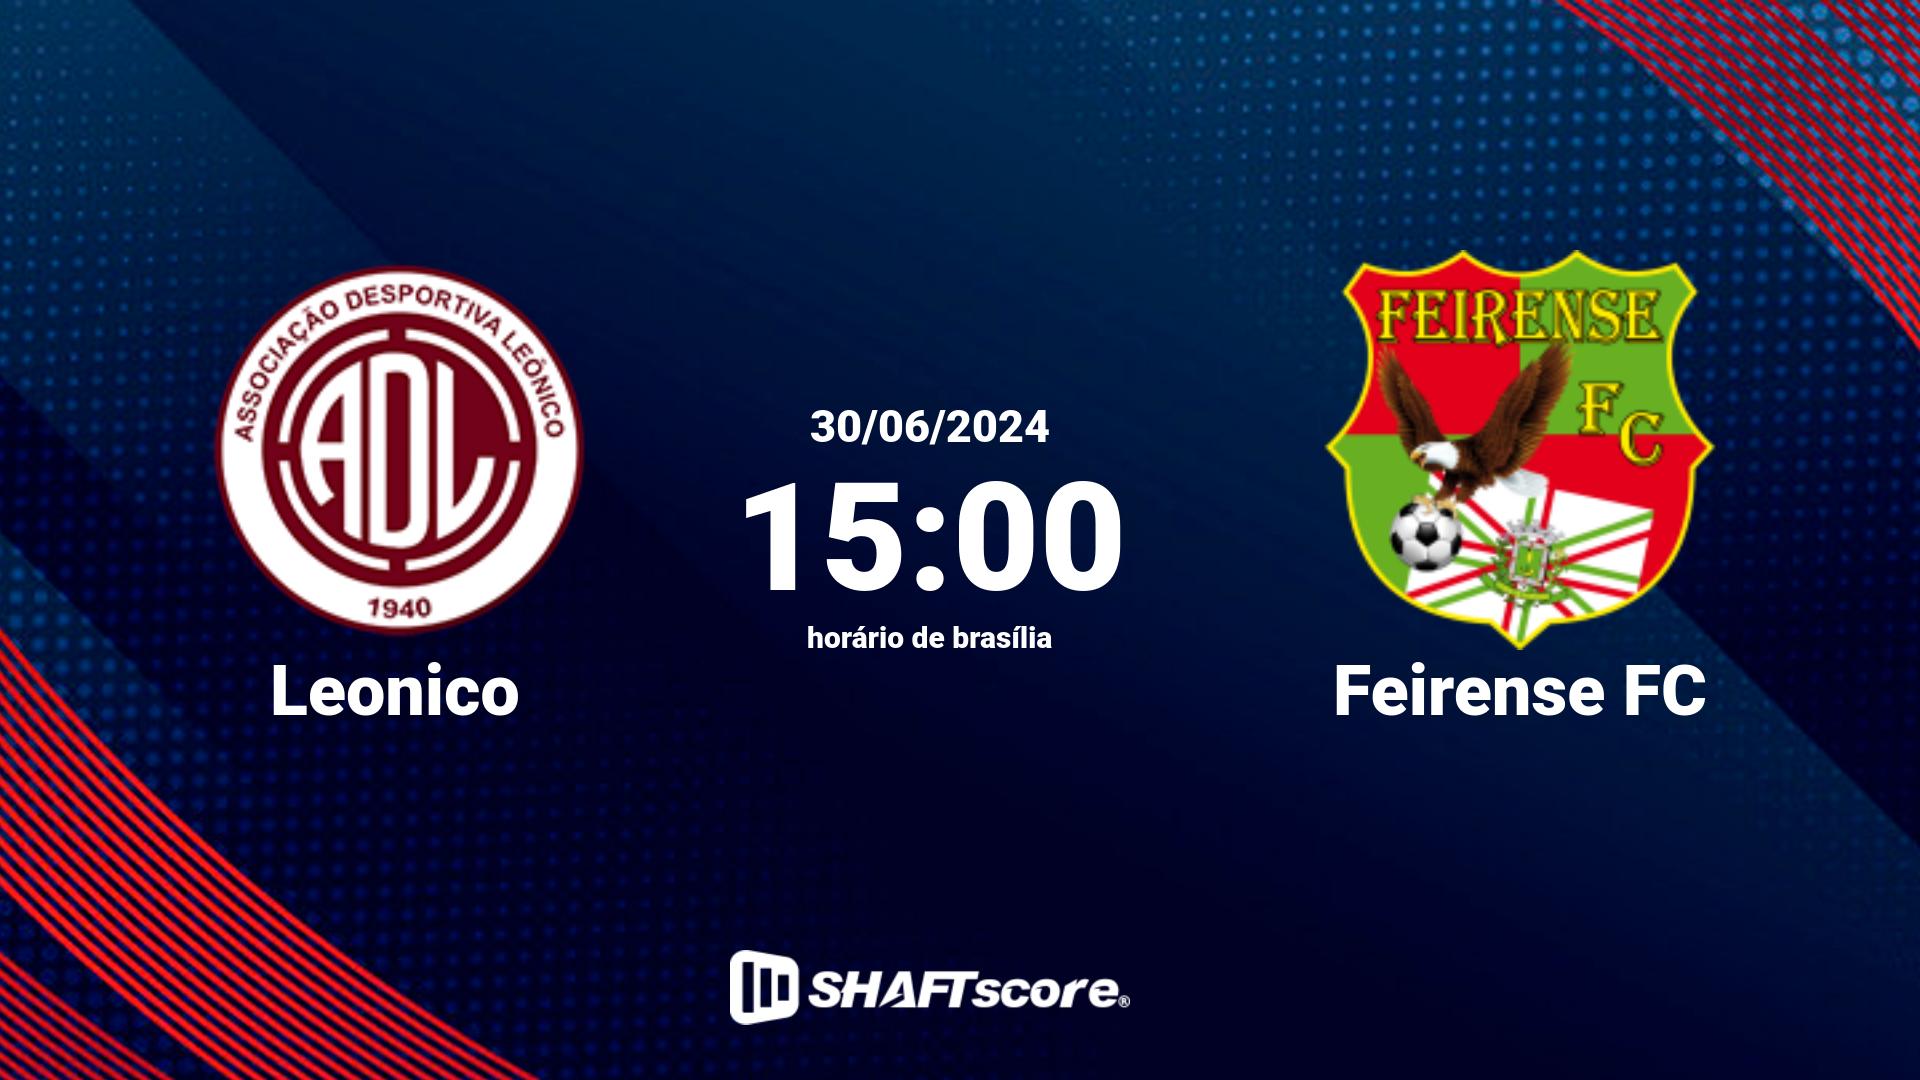 Estatísticas do jogo Leonico vs Feirense FC 30.06 15:00